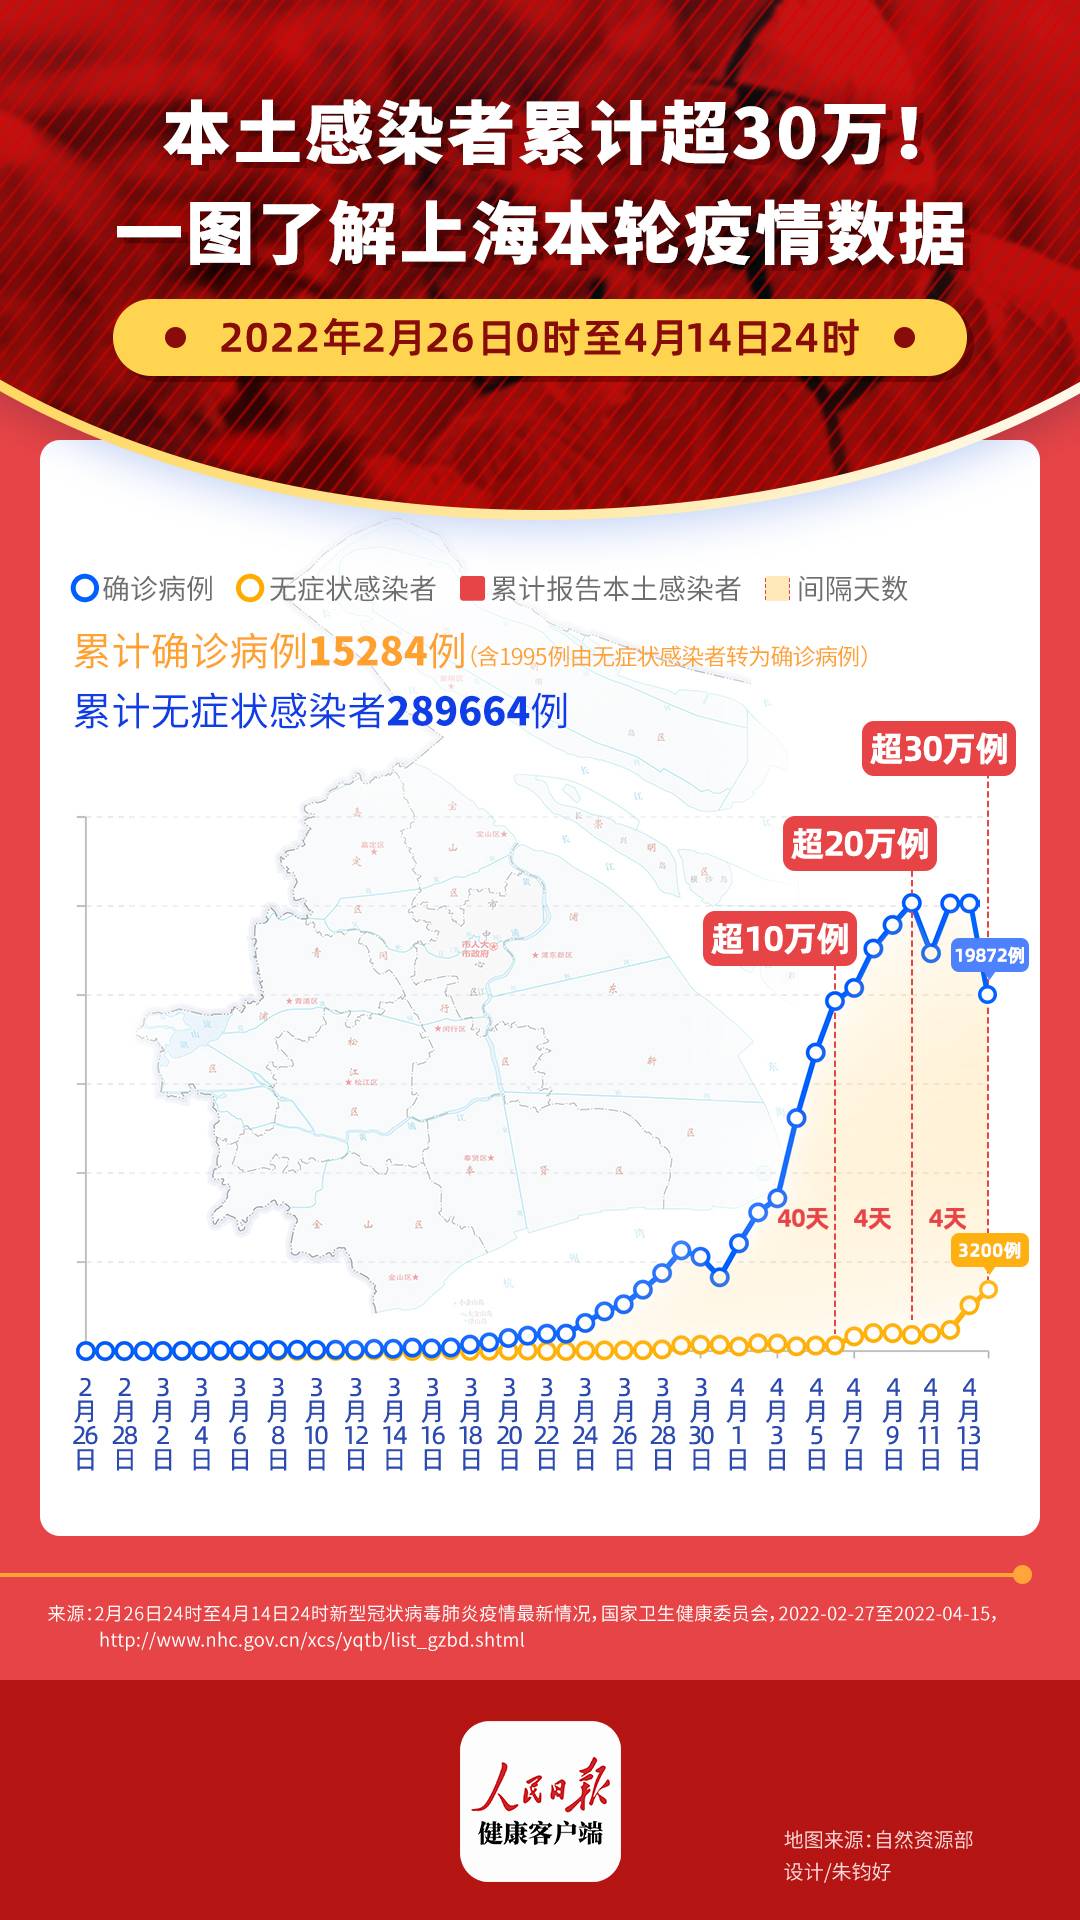 上海本轮疫情已累计报告本土感染者超30万例